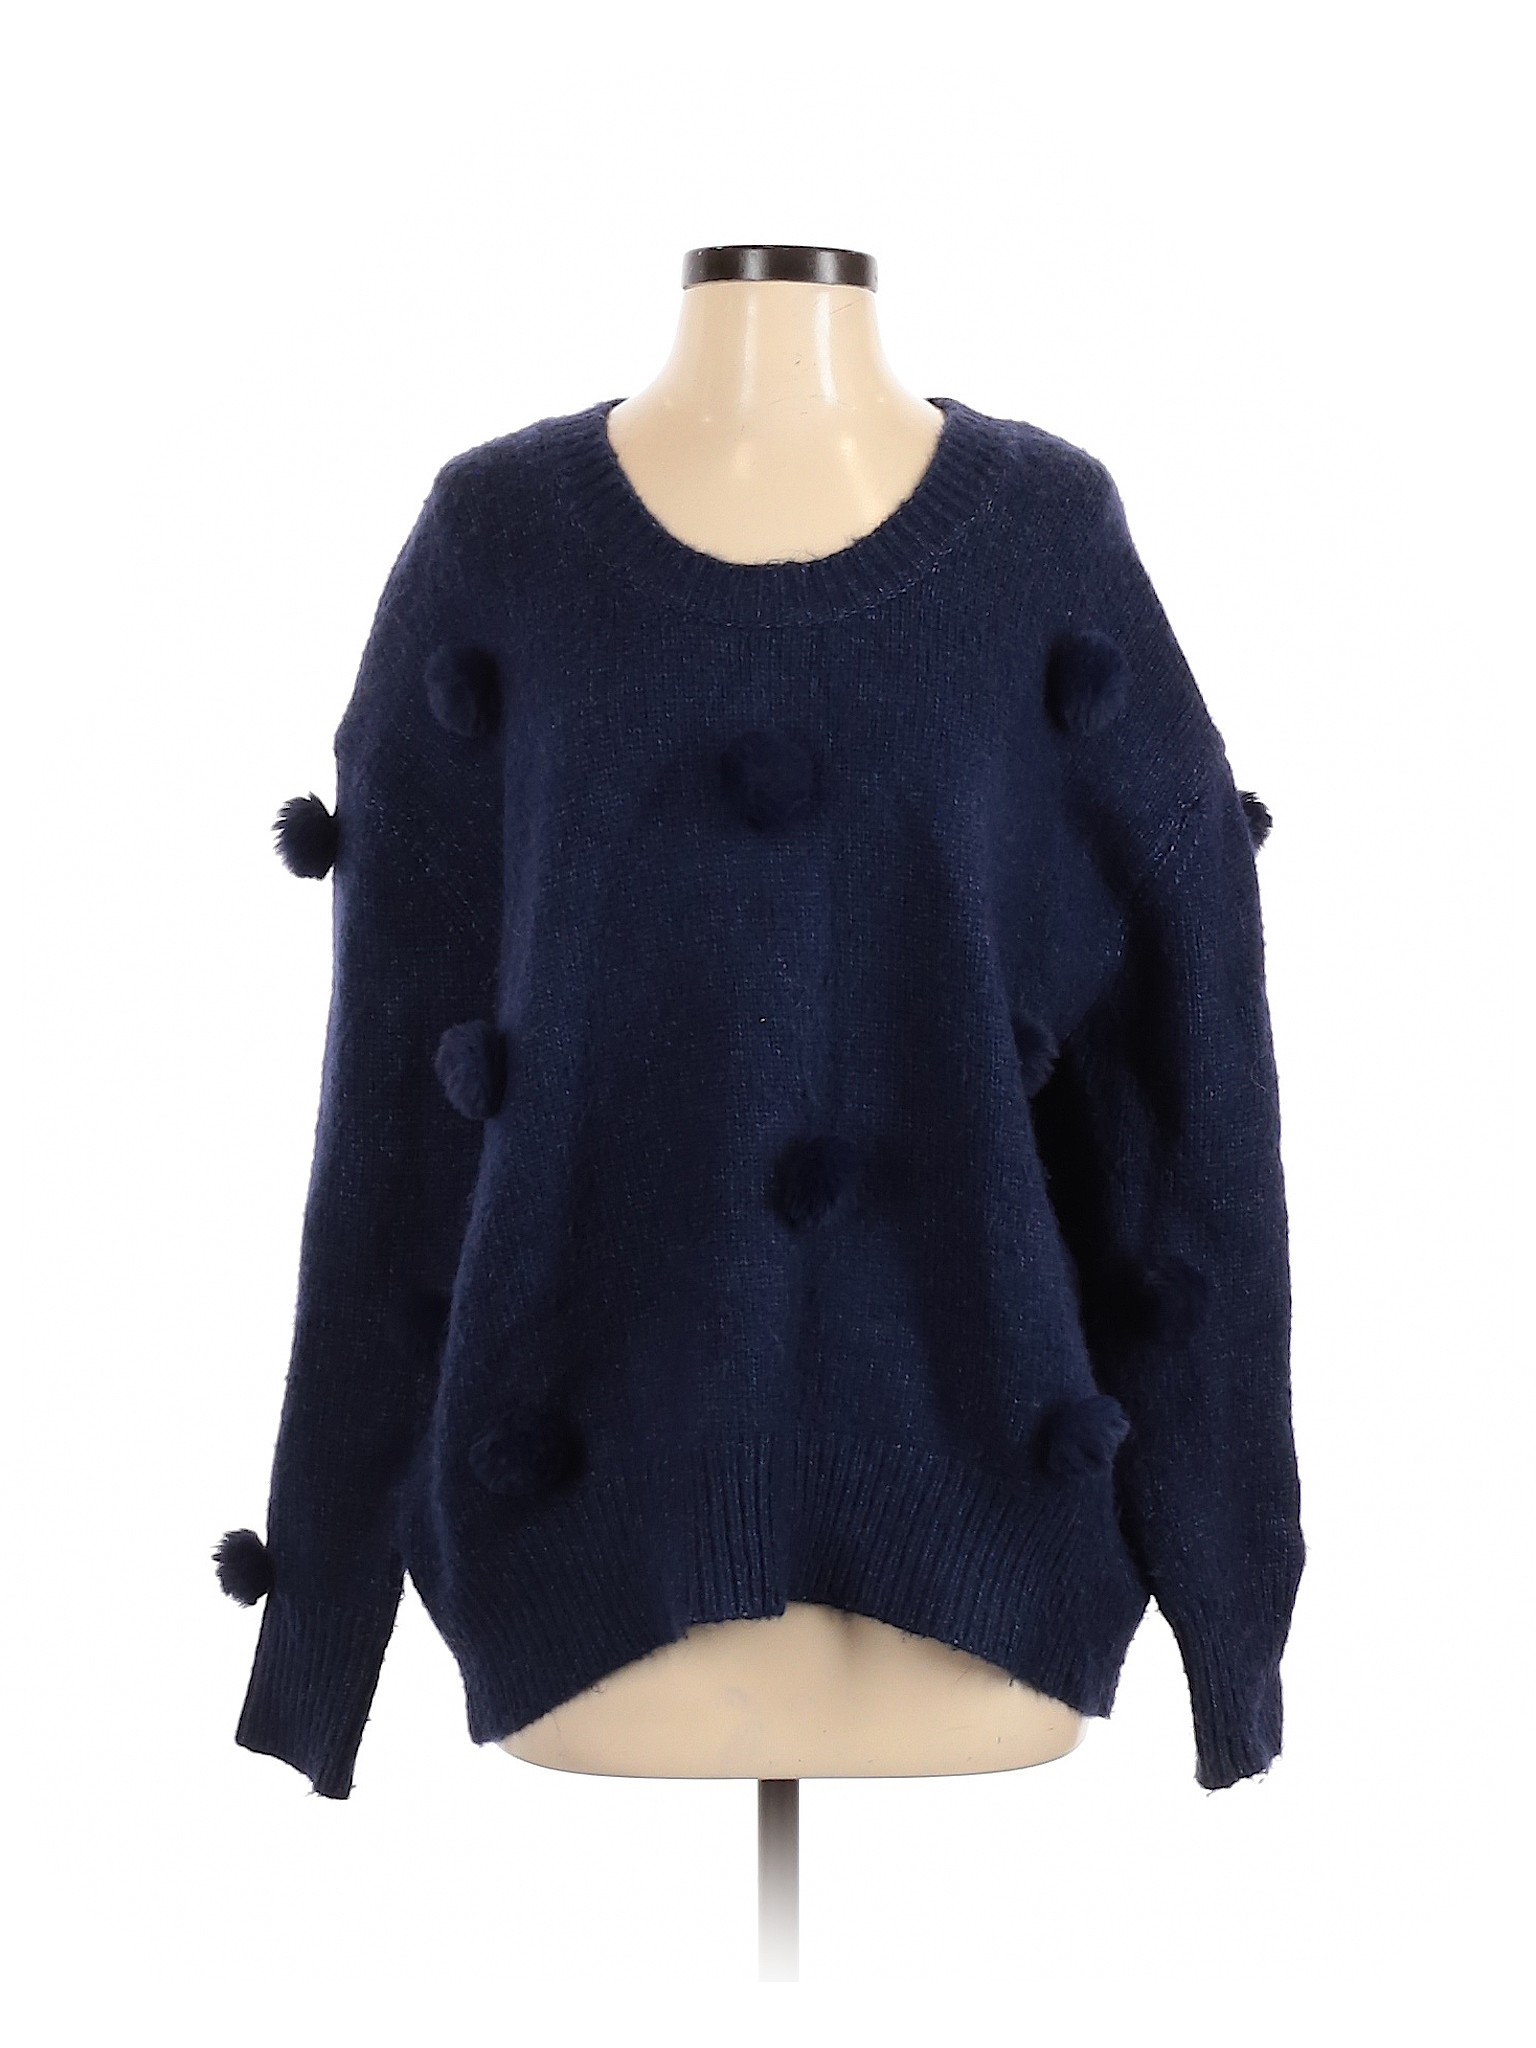 Zara Women Blue Pullover Sweater S | eBay